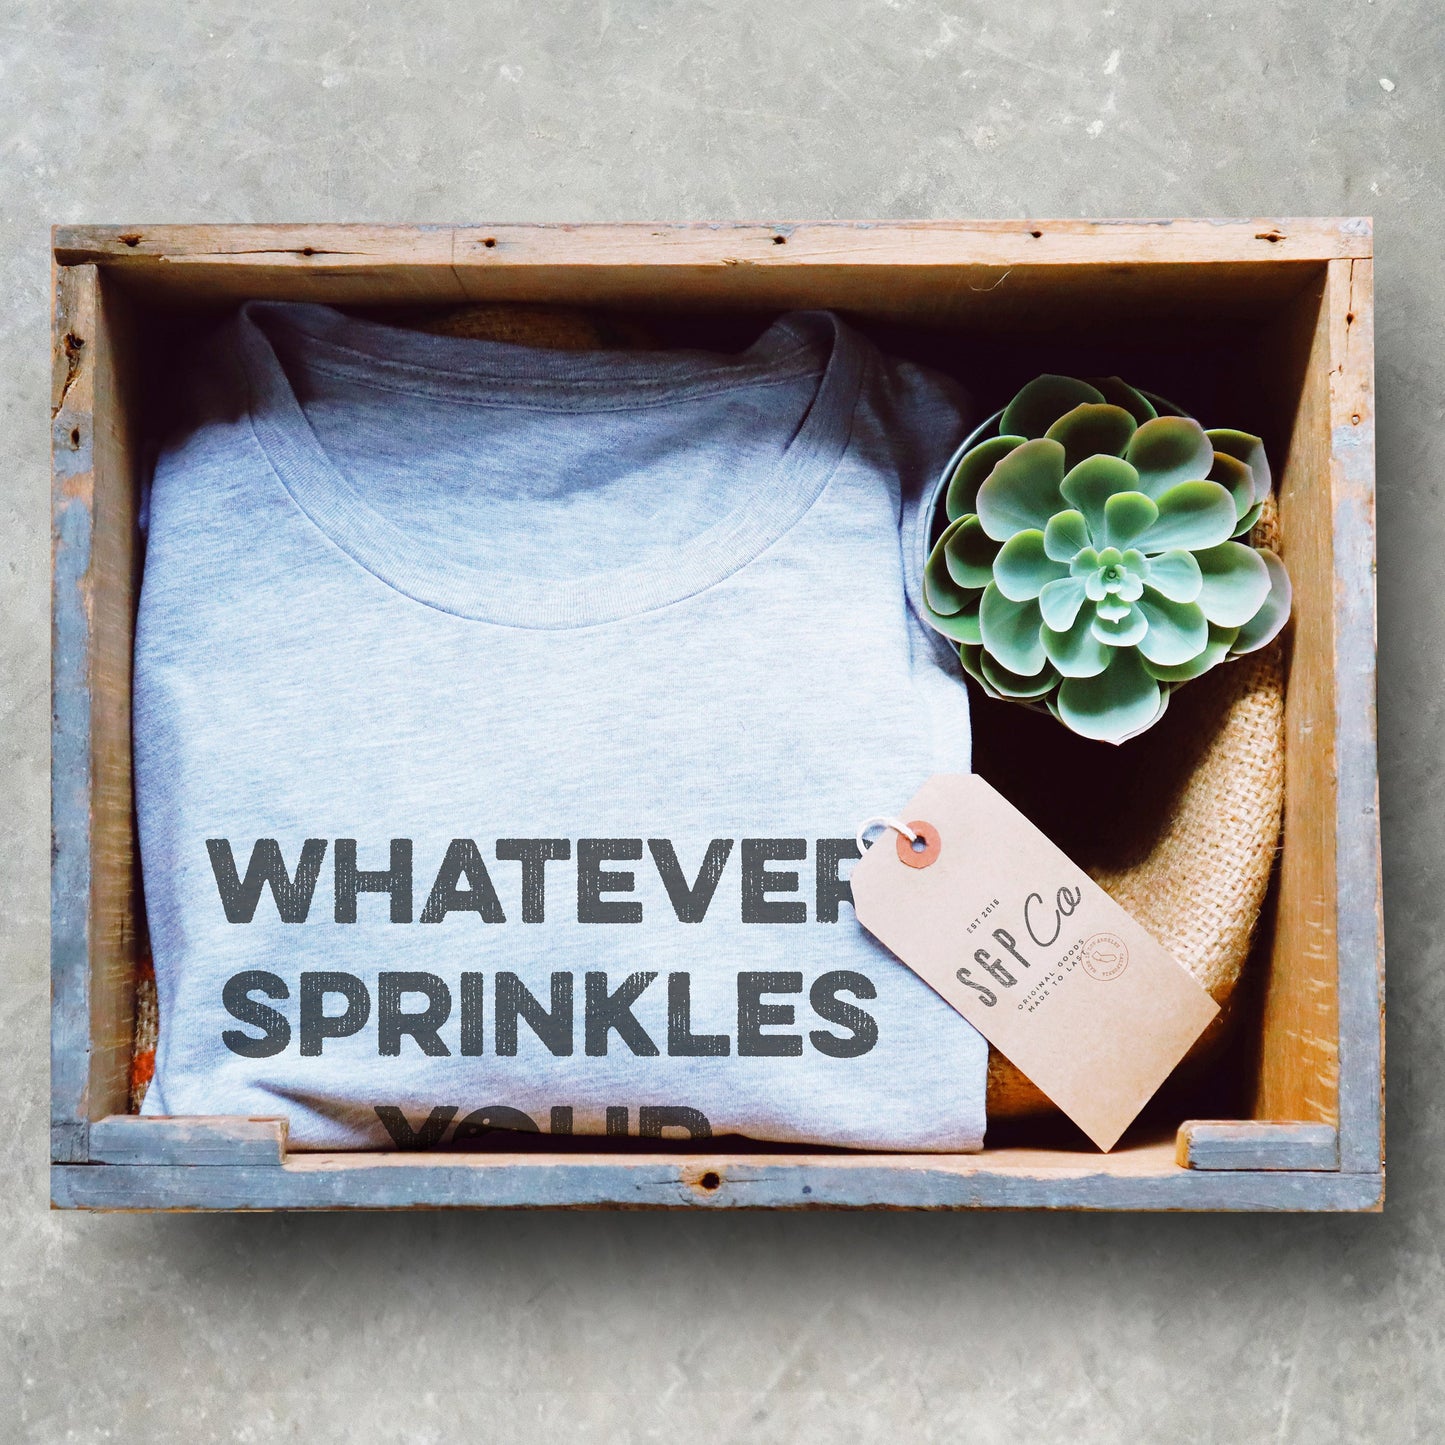 Whatever Sprinkles Your Donuts Unisex Shirt - Donut Shirt, Doughnut Shirt, Foodie Shirt, Donut Tshirts, Baking Shirt, Baker Gift, Donut Care